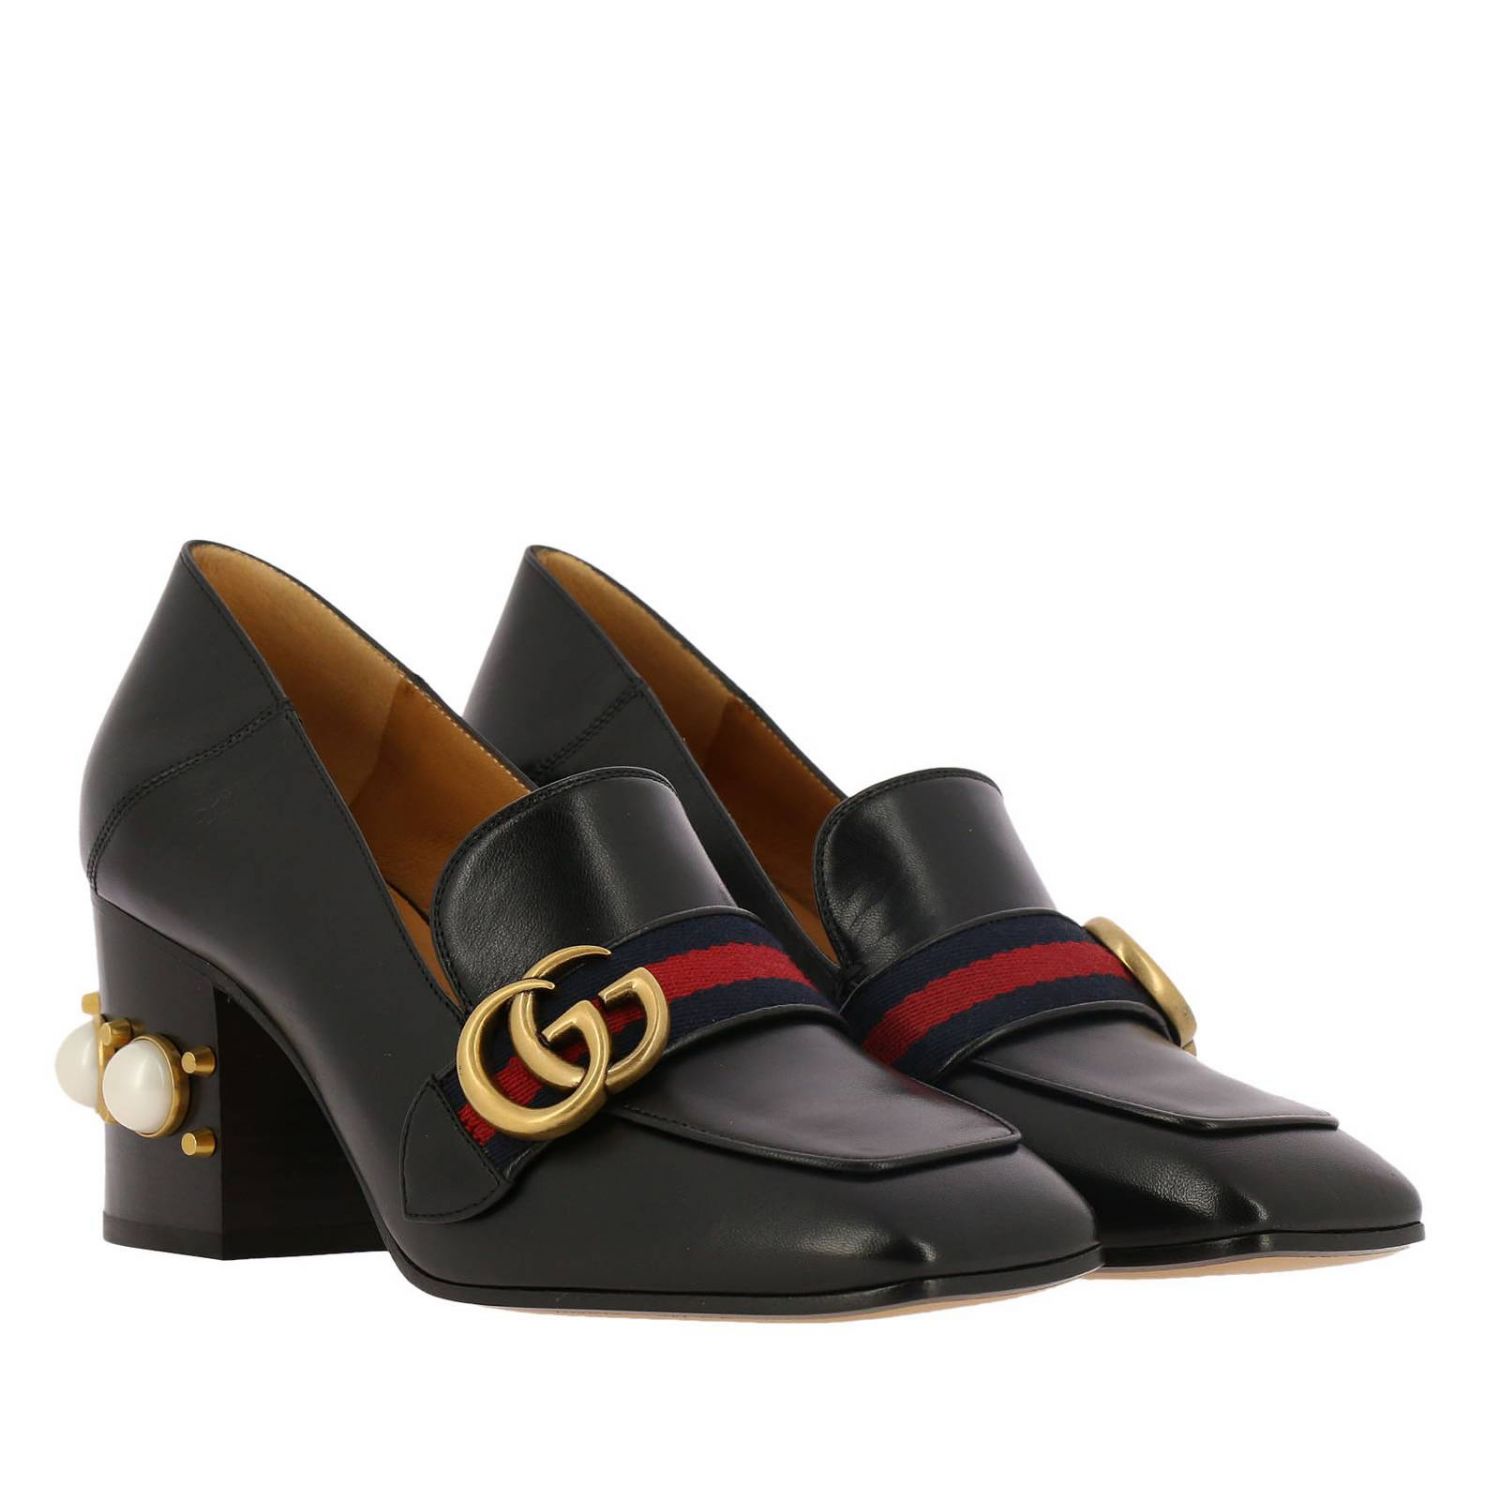 GUCCI: Shoes women | High Heel Shoes Gucci Women Black | High Heel ...